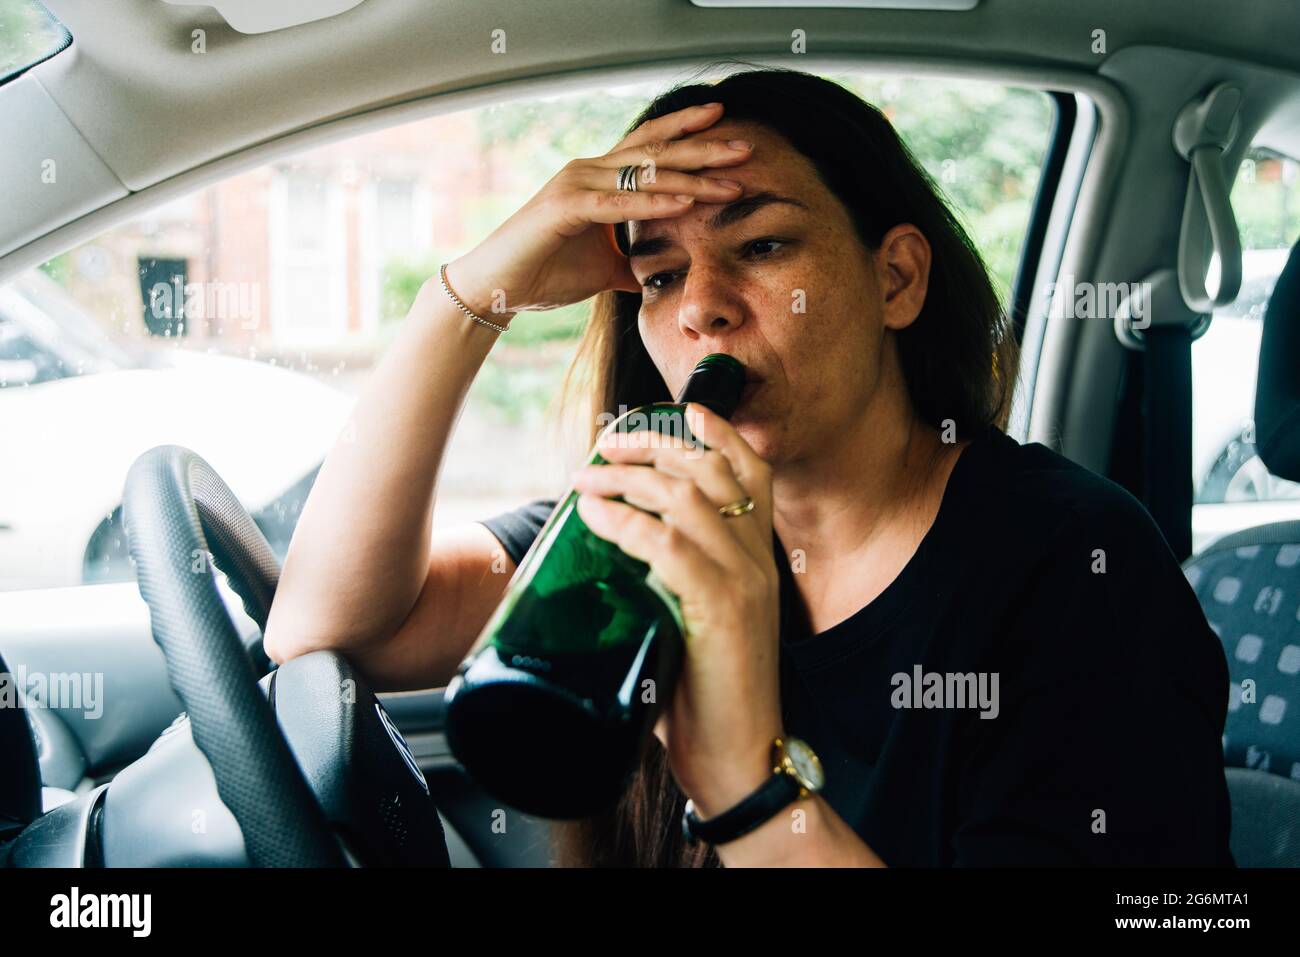 Eine Frau mit gemischter Rasse, die in ihrem Auto sitzt und eine Flasche Wein trinkt, wobei ihr Kopf in den Händen gestresst aussieht Stockfoto